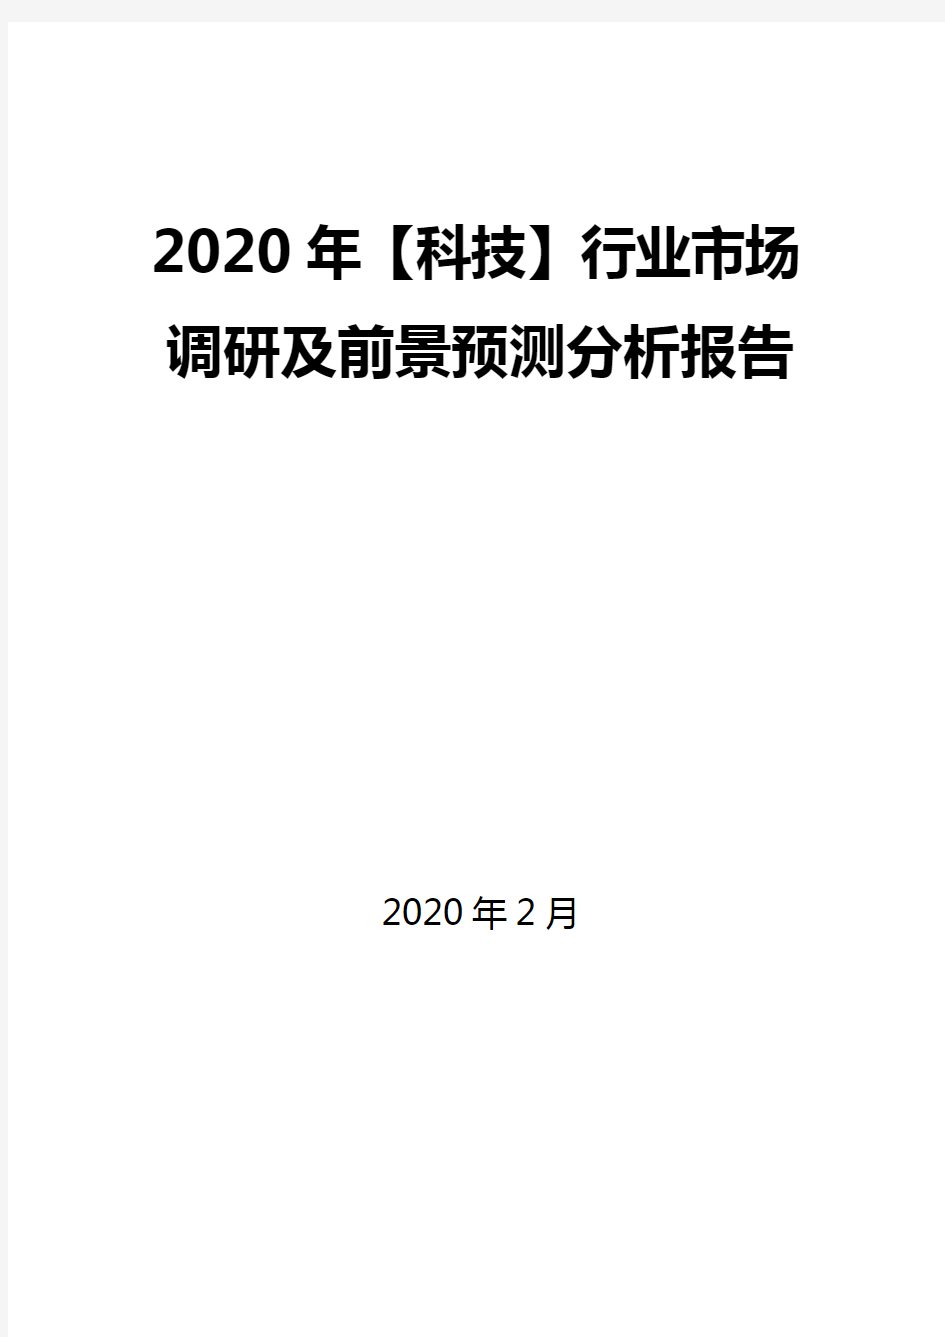 2020年【科技】行业市场调研及前景预测分析报告